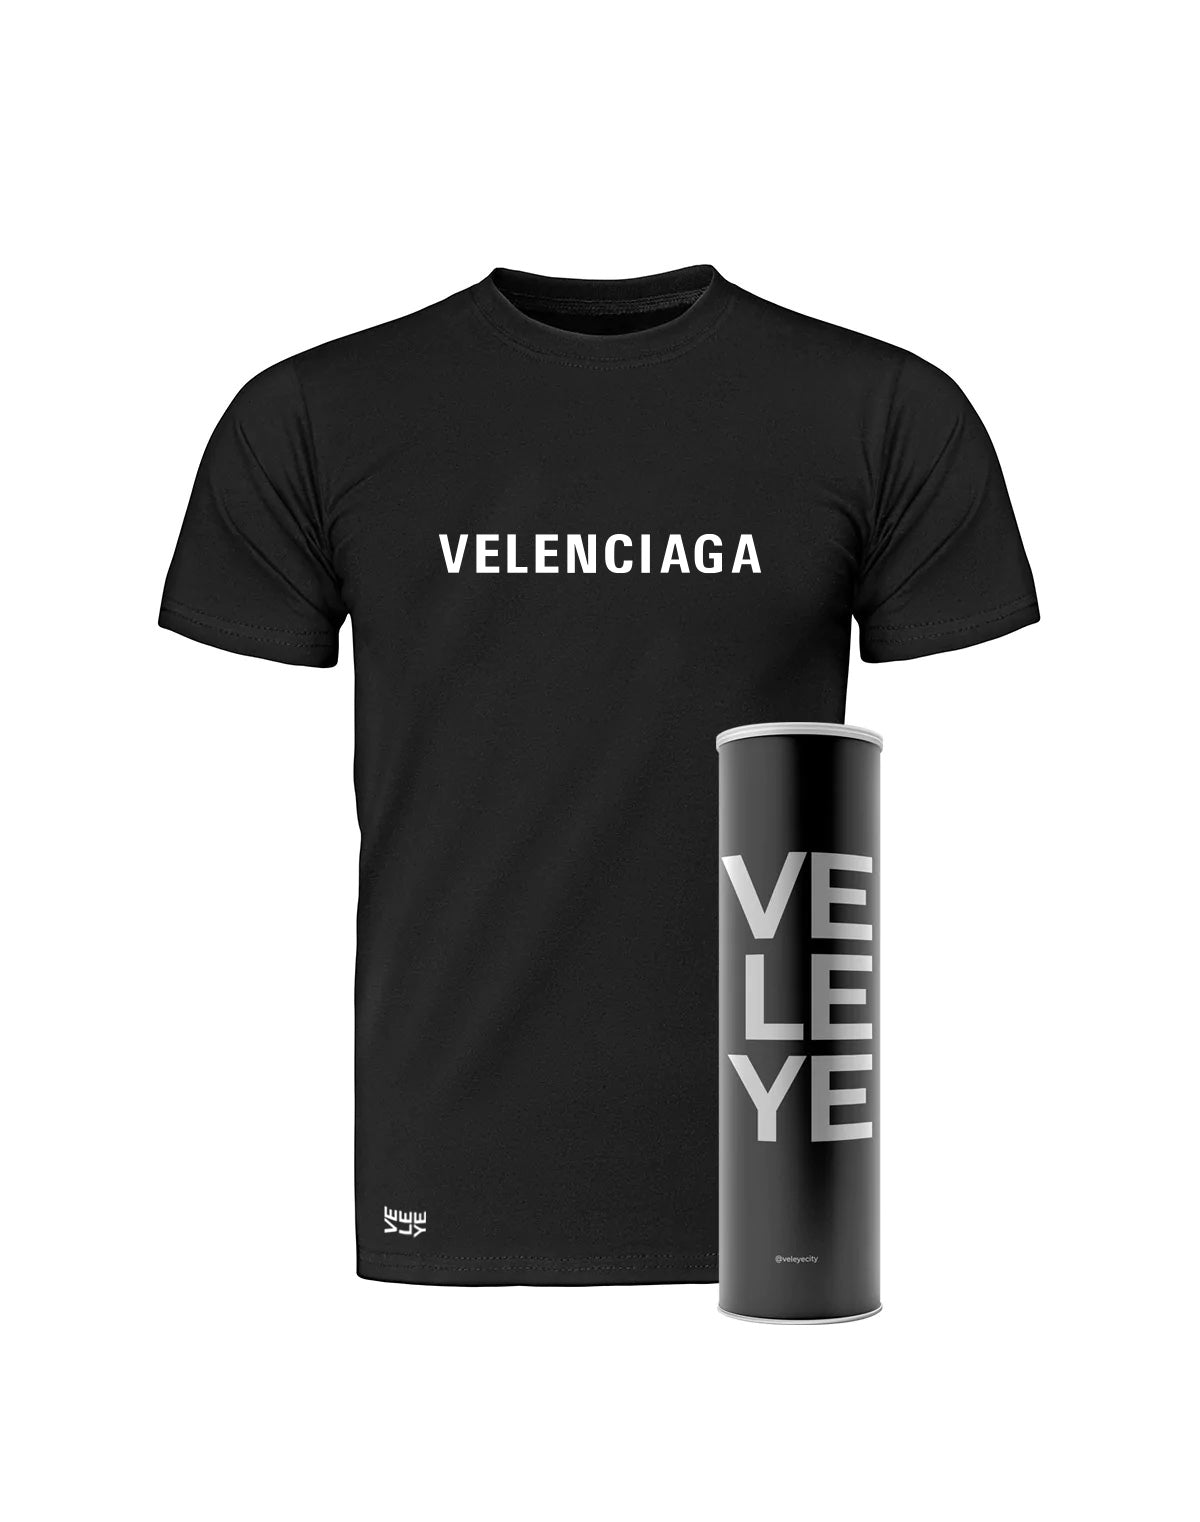 Veleye Limited V1 - Velenciaga